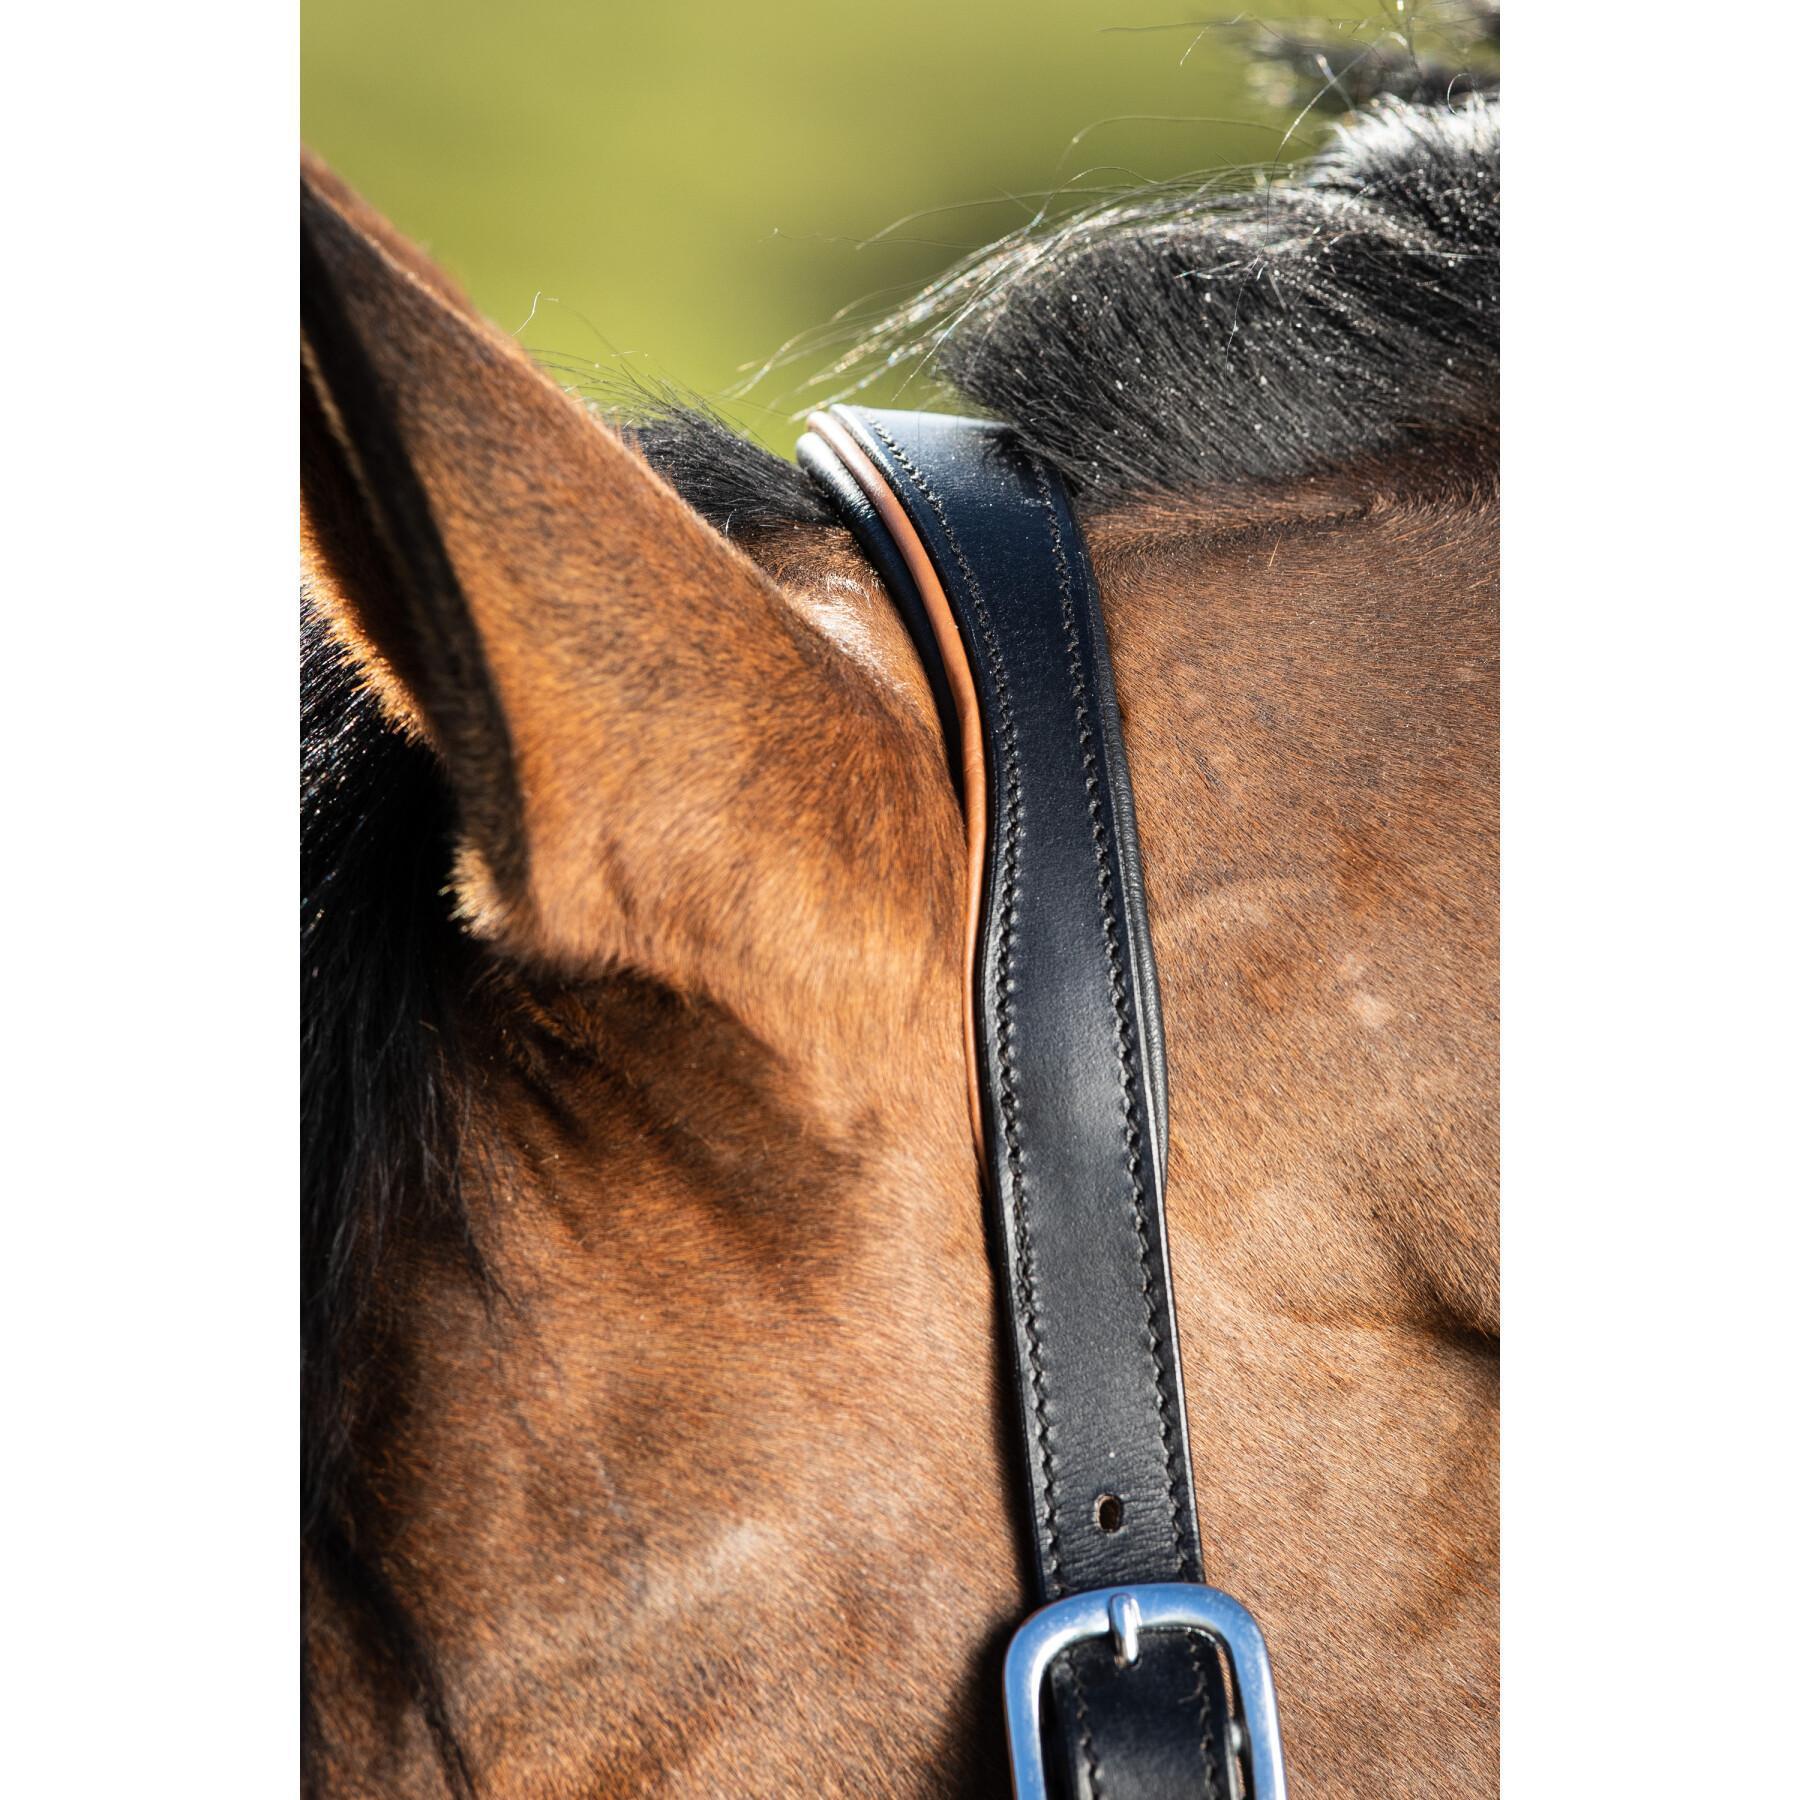 Cabresto de couro para cavalos HFI Two-Tone